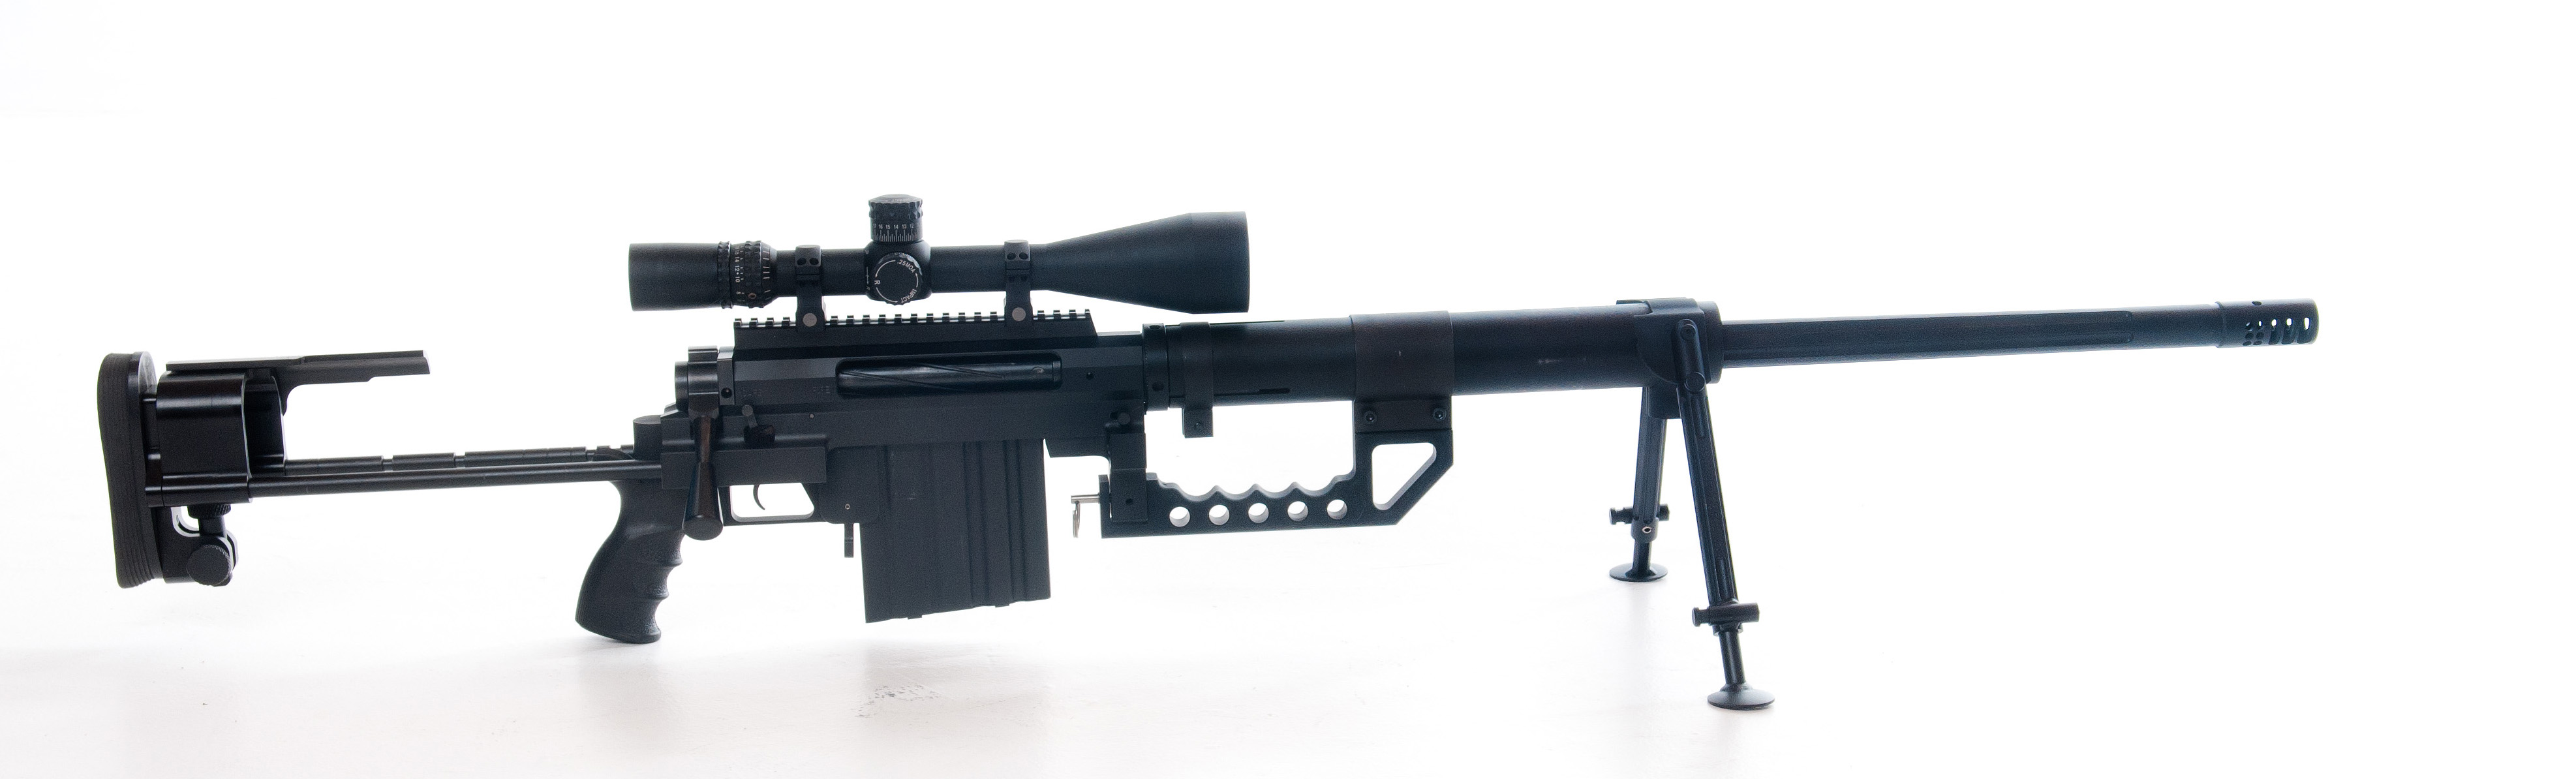 584099 Шпалери і Інтервенційна Снайперська Гвинтівка Cheytac M200 картинки на робочий стіл. Завантажити  заставки на ПК безкоштовно